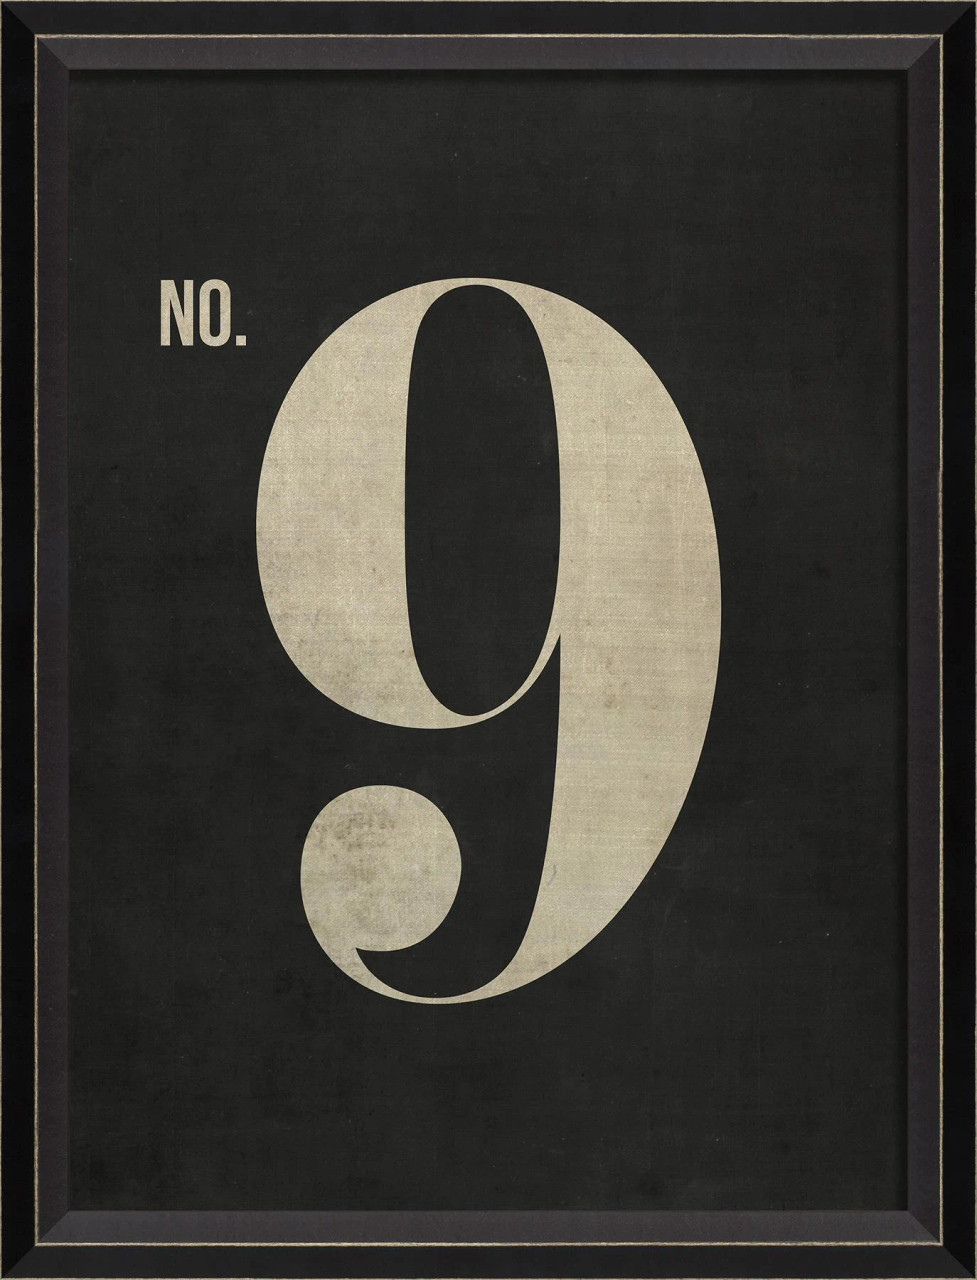 Number 9 on black - large